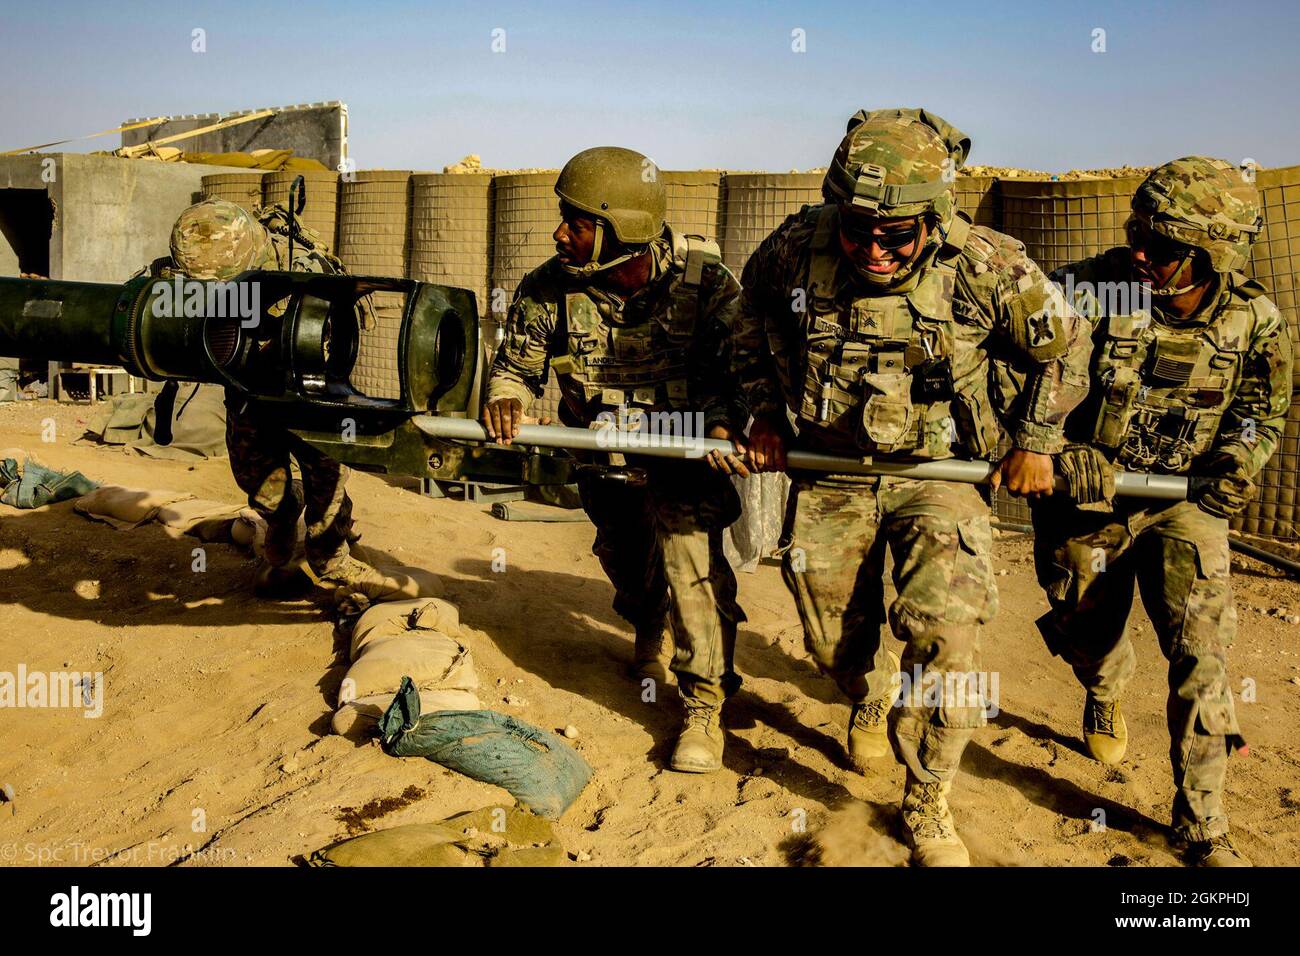 Soldaten der US-Armee, die der C/2-156th Infantry, 2nd PLT Charlie Battery/ 1-141 FA zugewiesen wurden, führen ein Mannschaftstraining auf einem M777-Howitzer bei MSS Conoco, Syrien, durch., 14. Juni 2021. Ziel der Mannschaftsschulung ist es, das Know-how der Sicherheitsoperationen in der Region zu validieren. Stockfoto